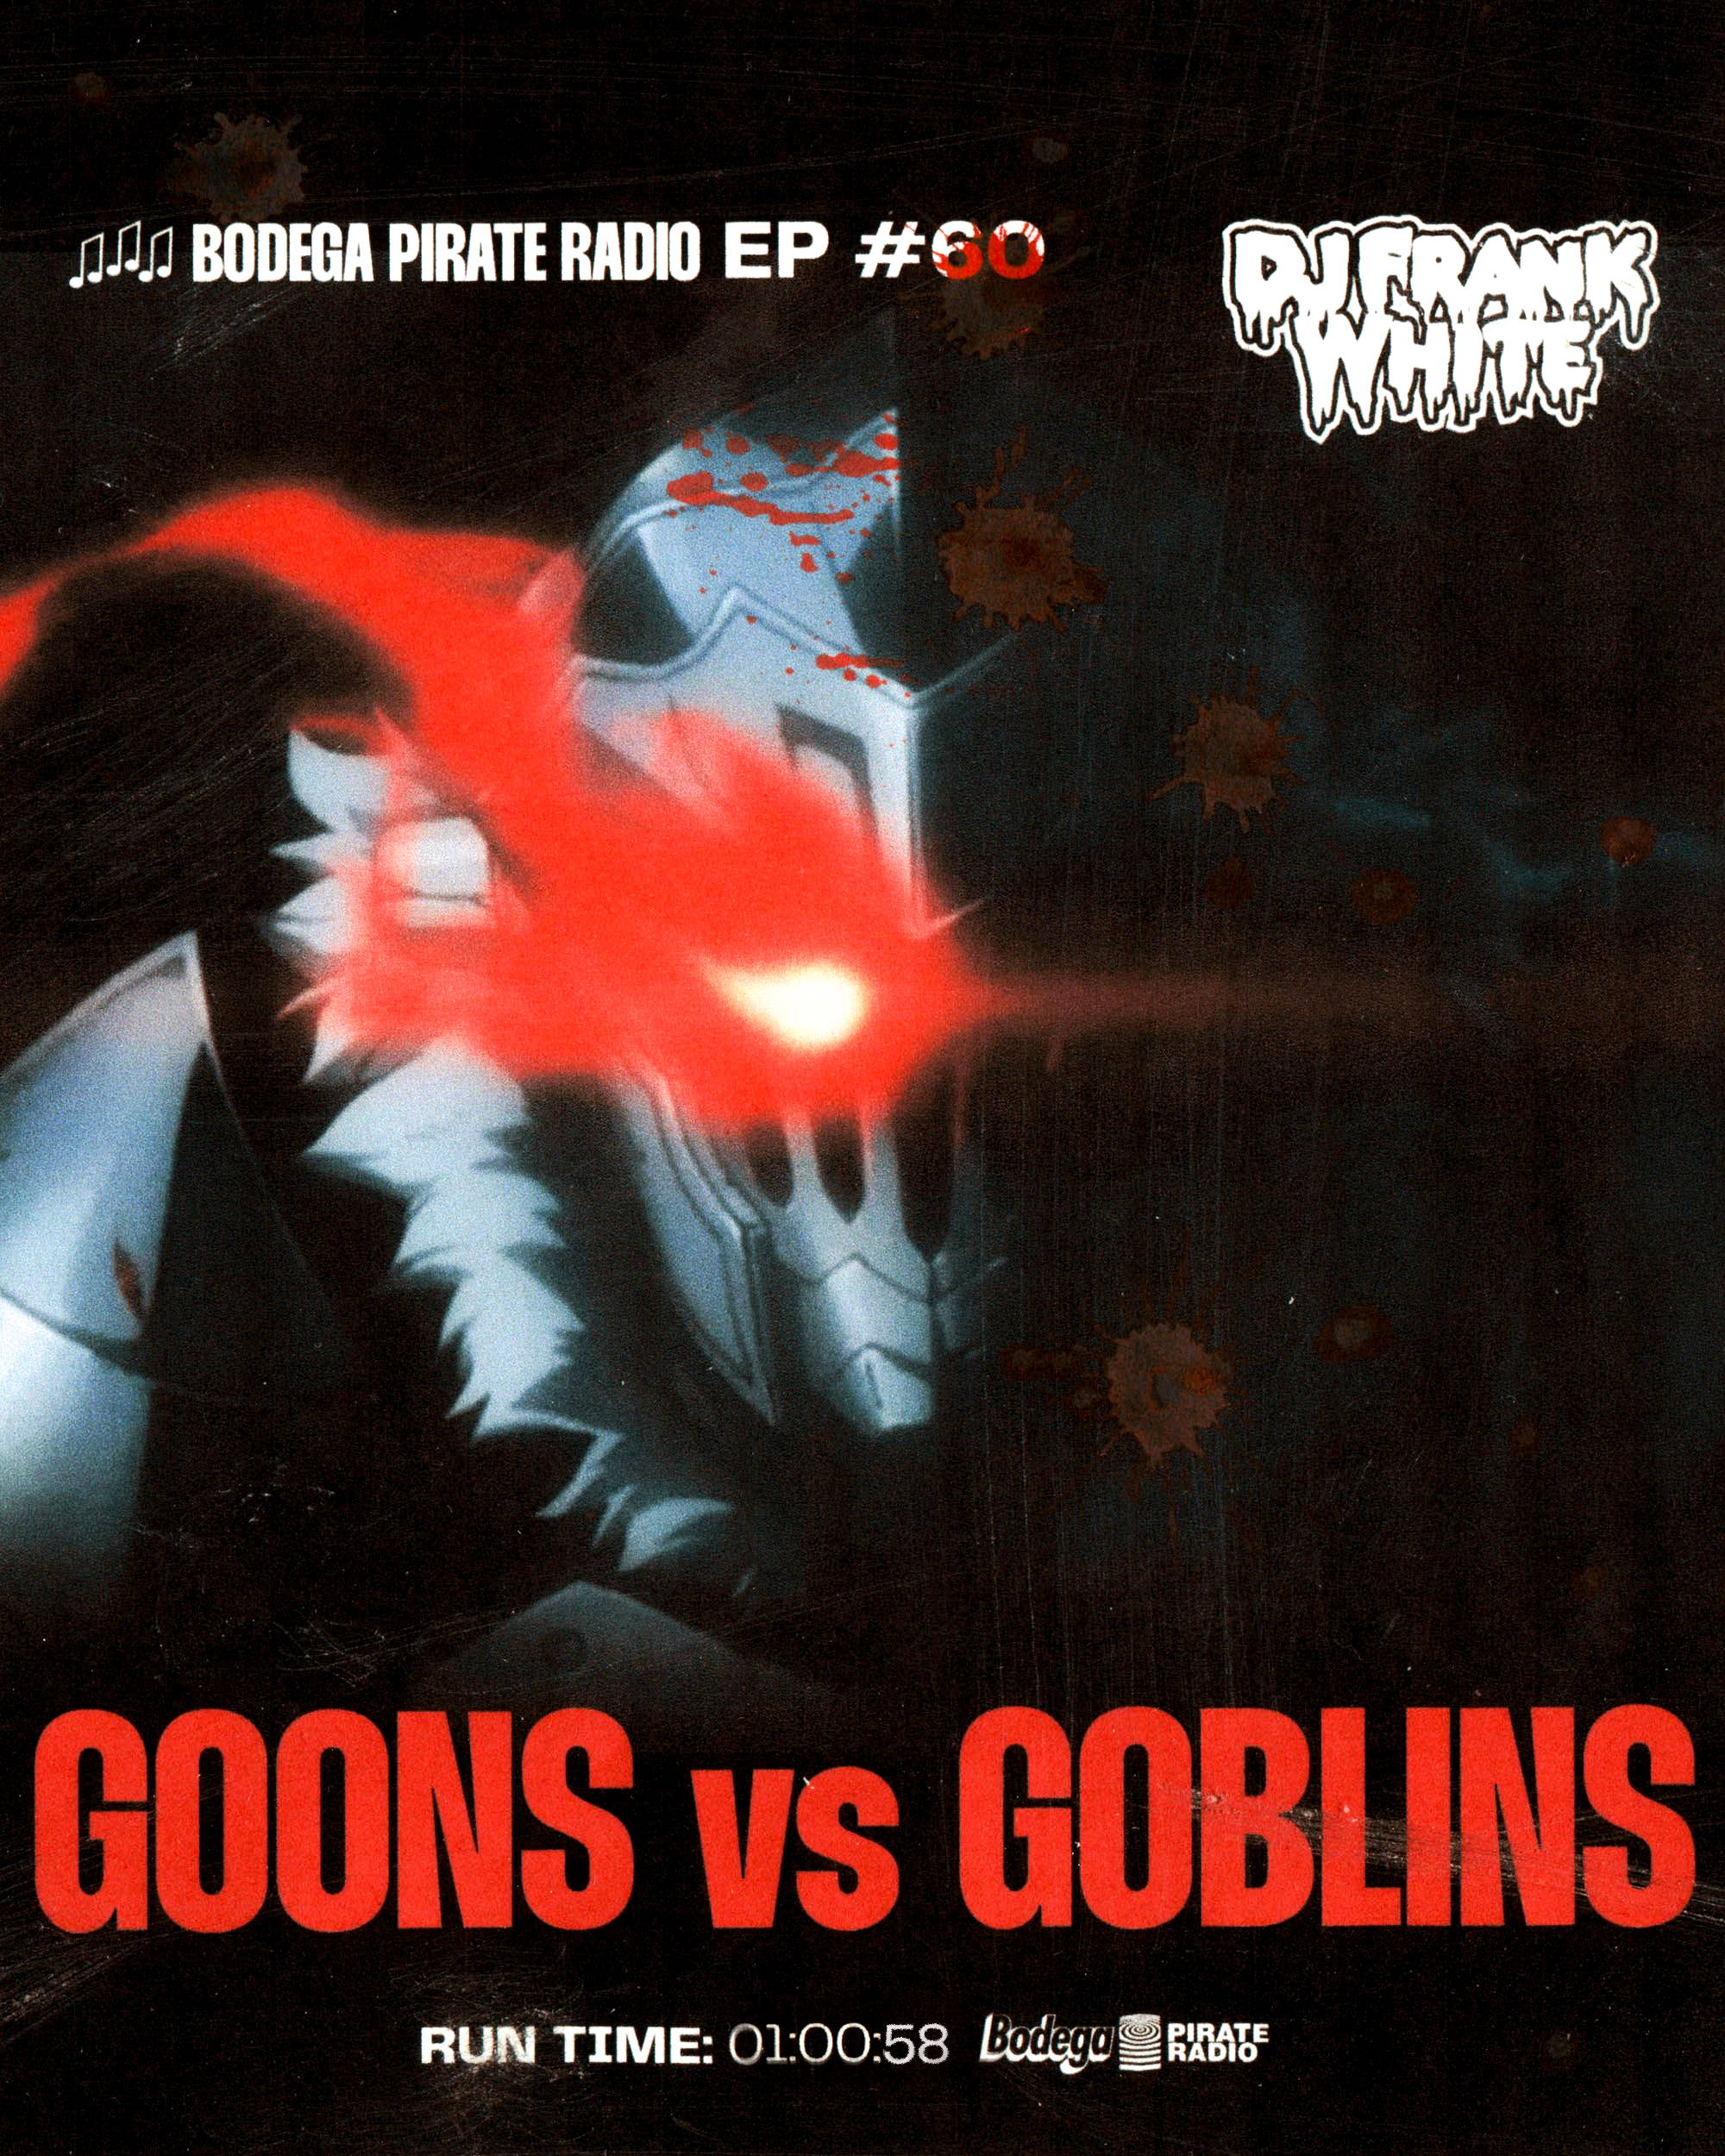 Bodega Pirate Radio EP #60 - DJ Frank White “Goons vs Goblins”